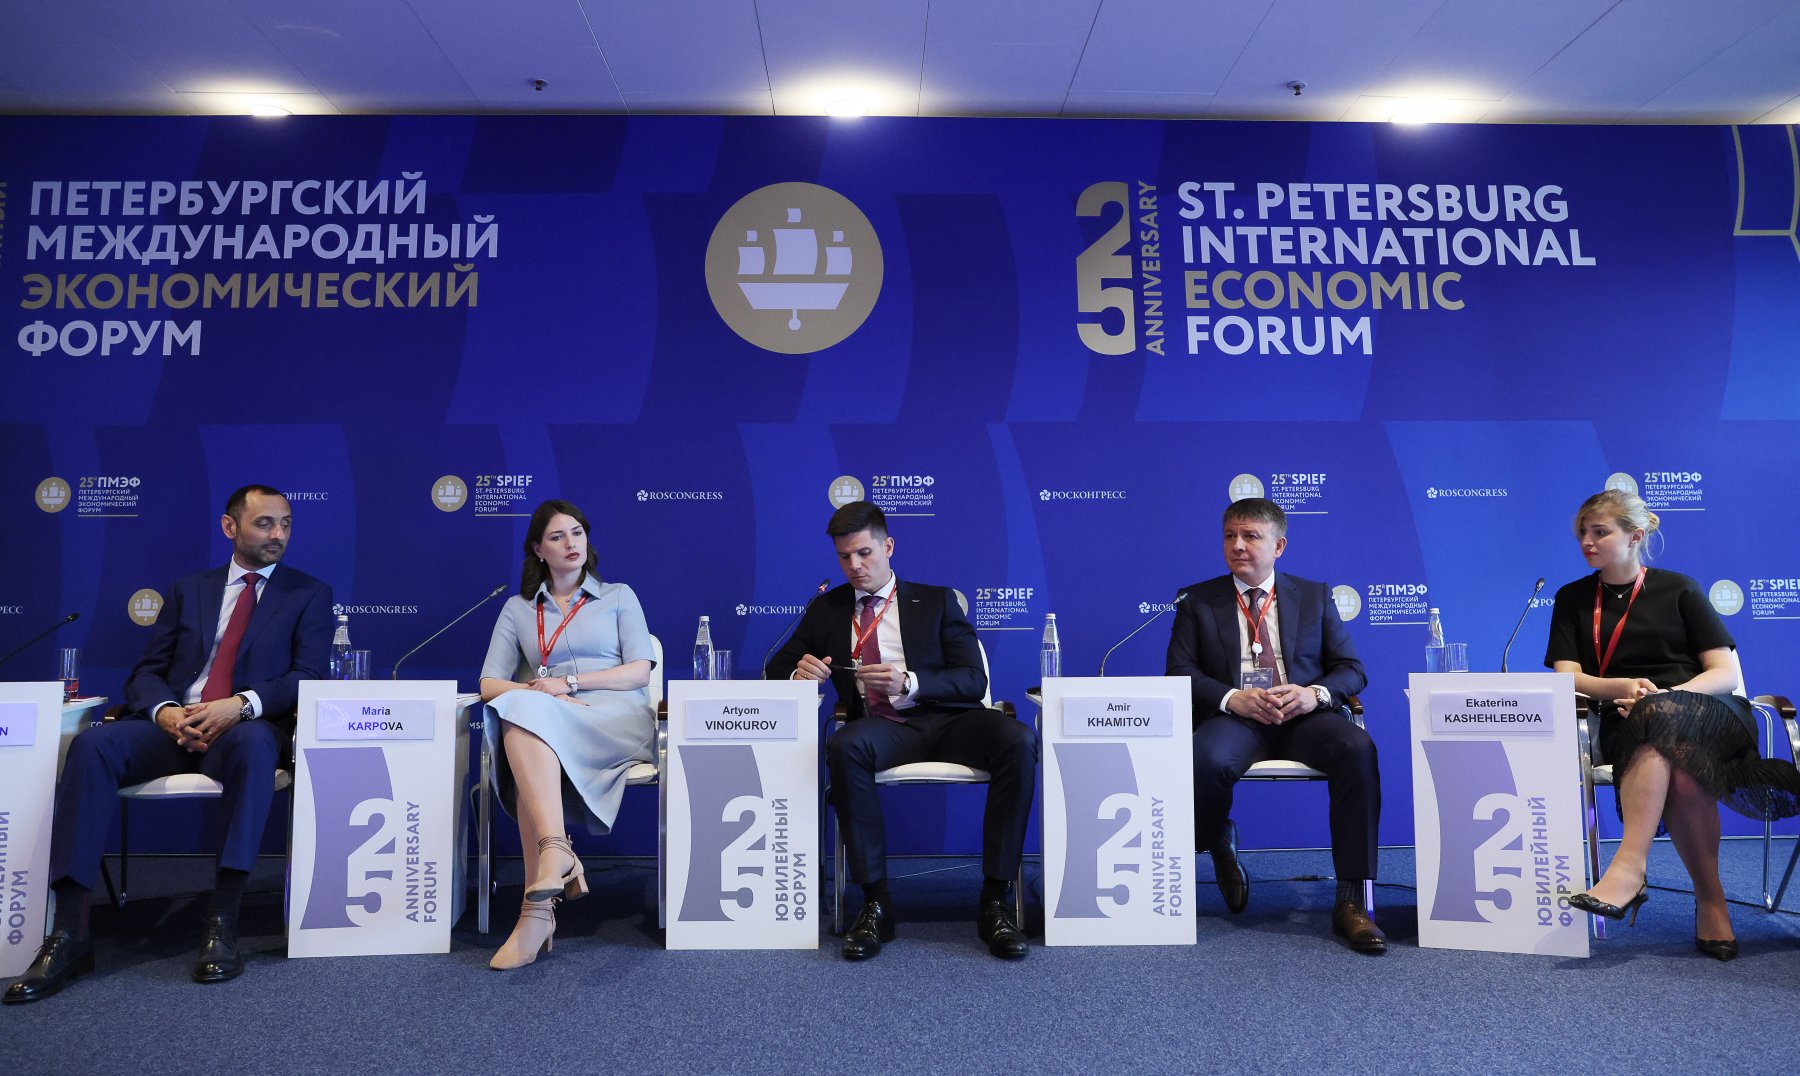 Депутат Госдумы Хамитов: «по темпам роста киберспорта мы находимся в мировой десятке лидеров» 